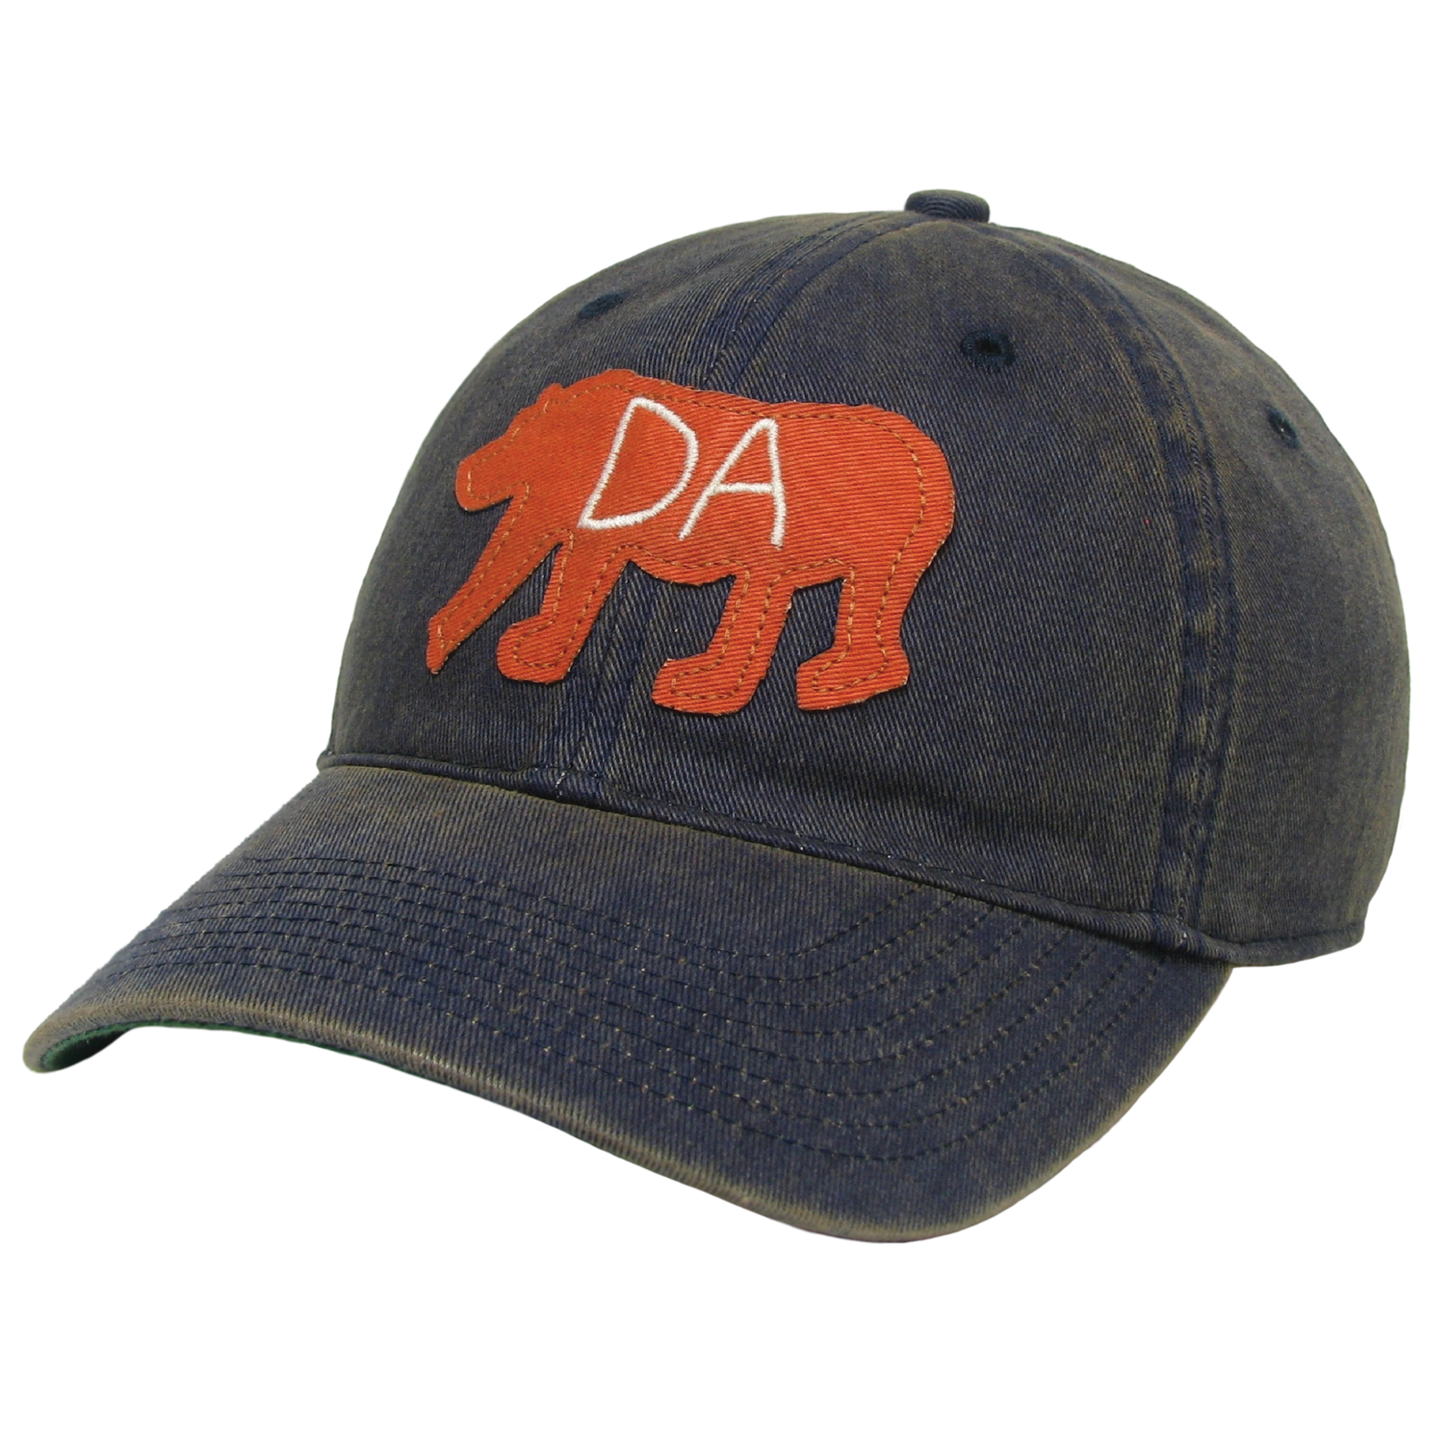 Da Bear® Old Favorite Hat in Navy